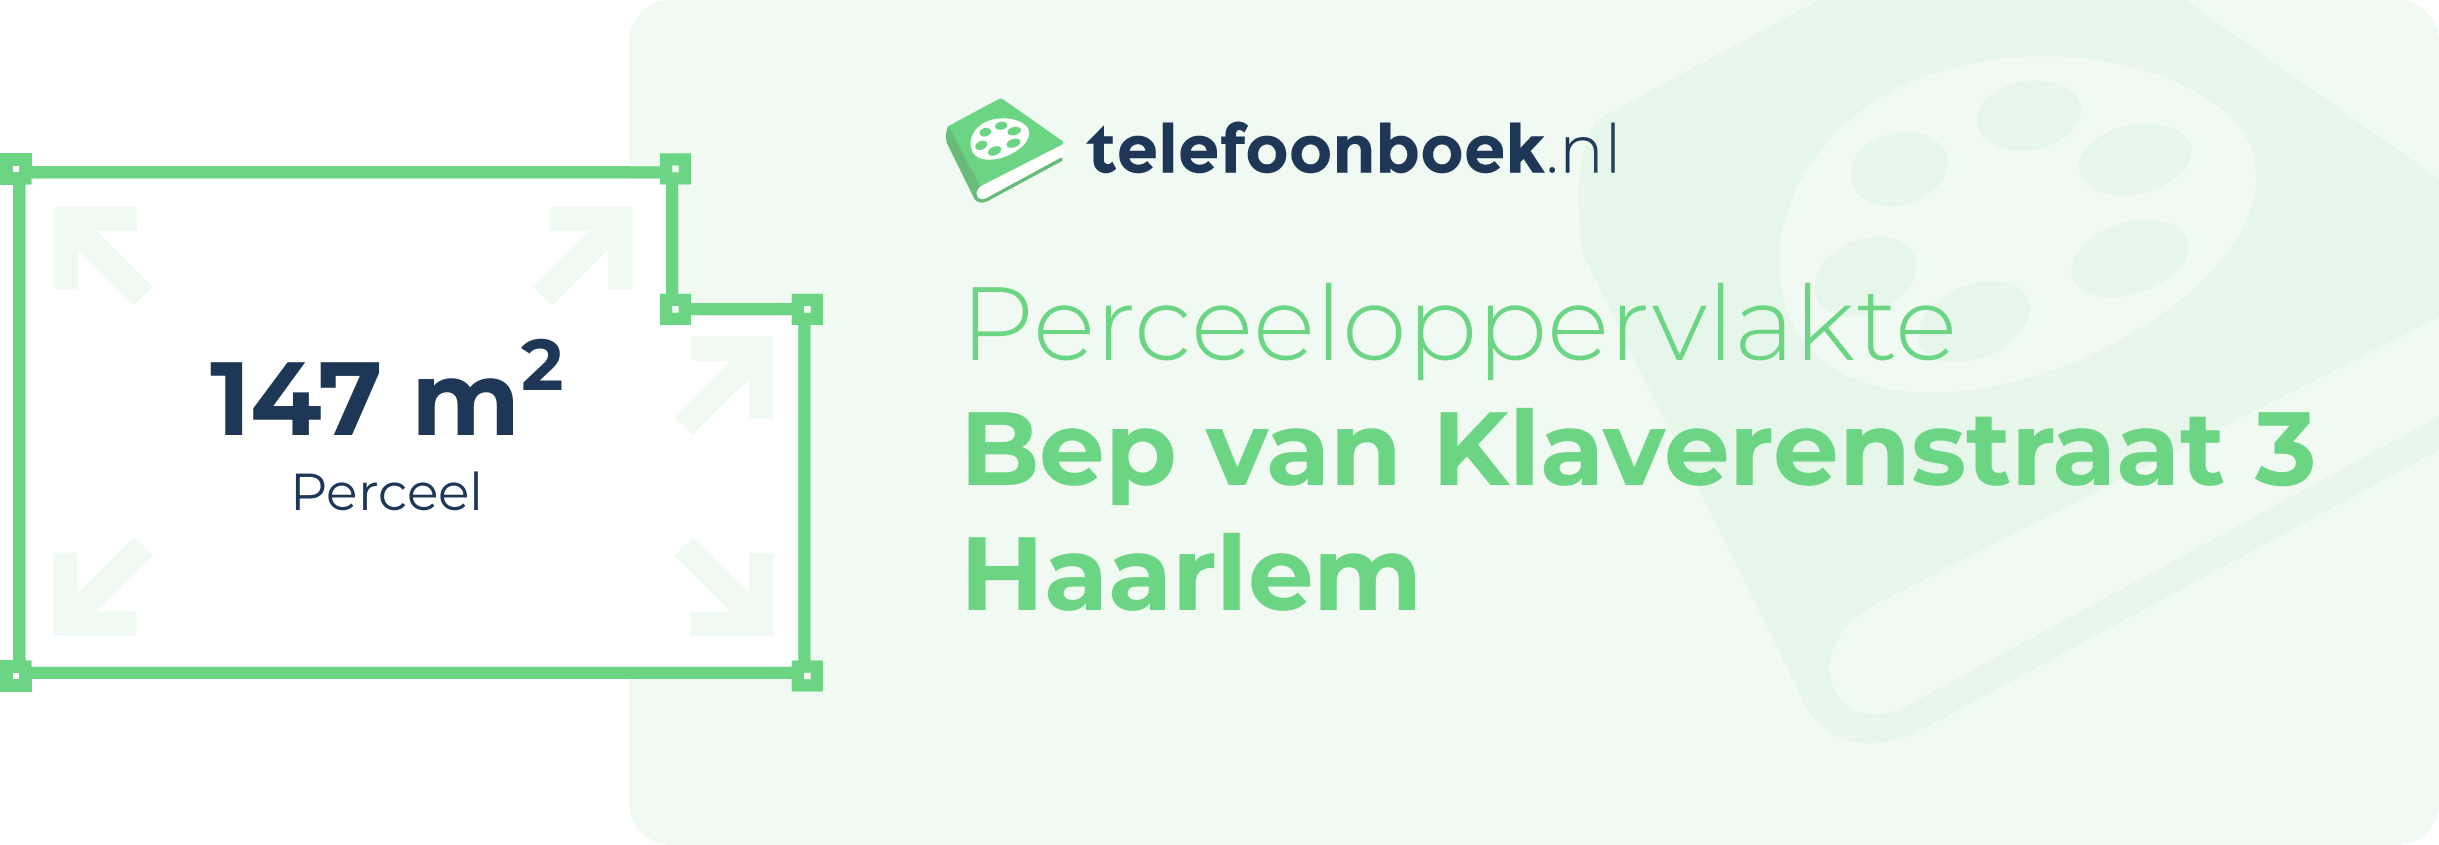 Perceeloppervlakte Bep Van Klaverenstraat 3 Haarlem